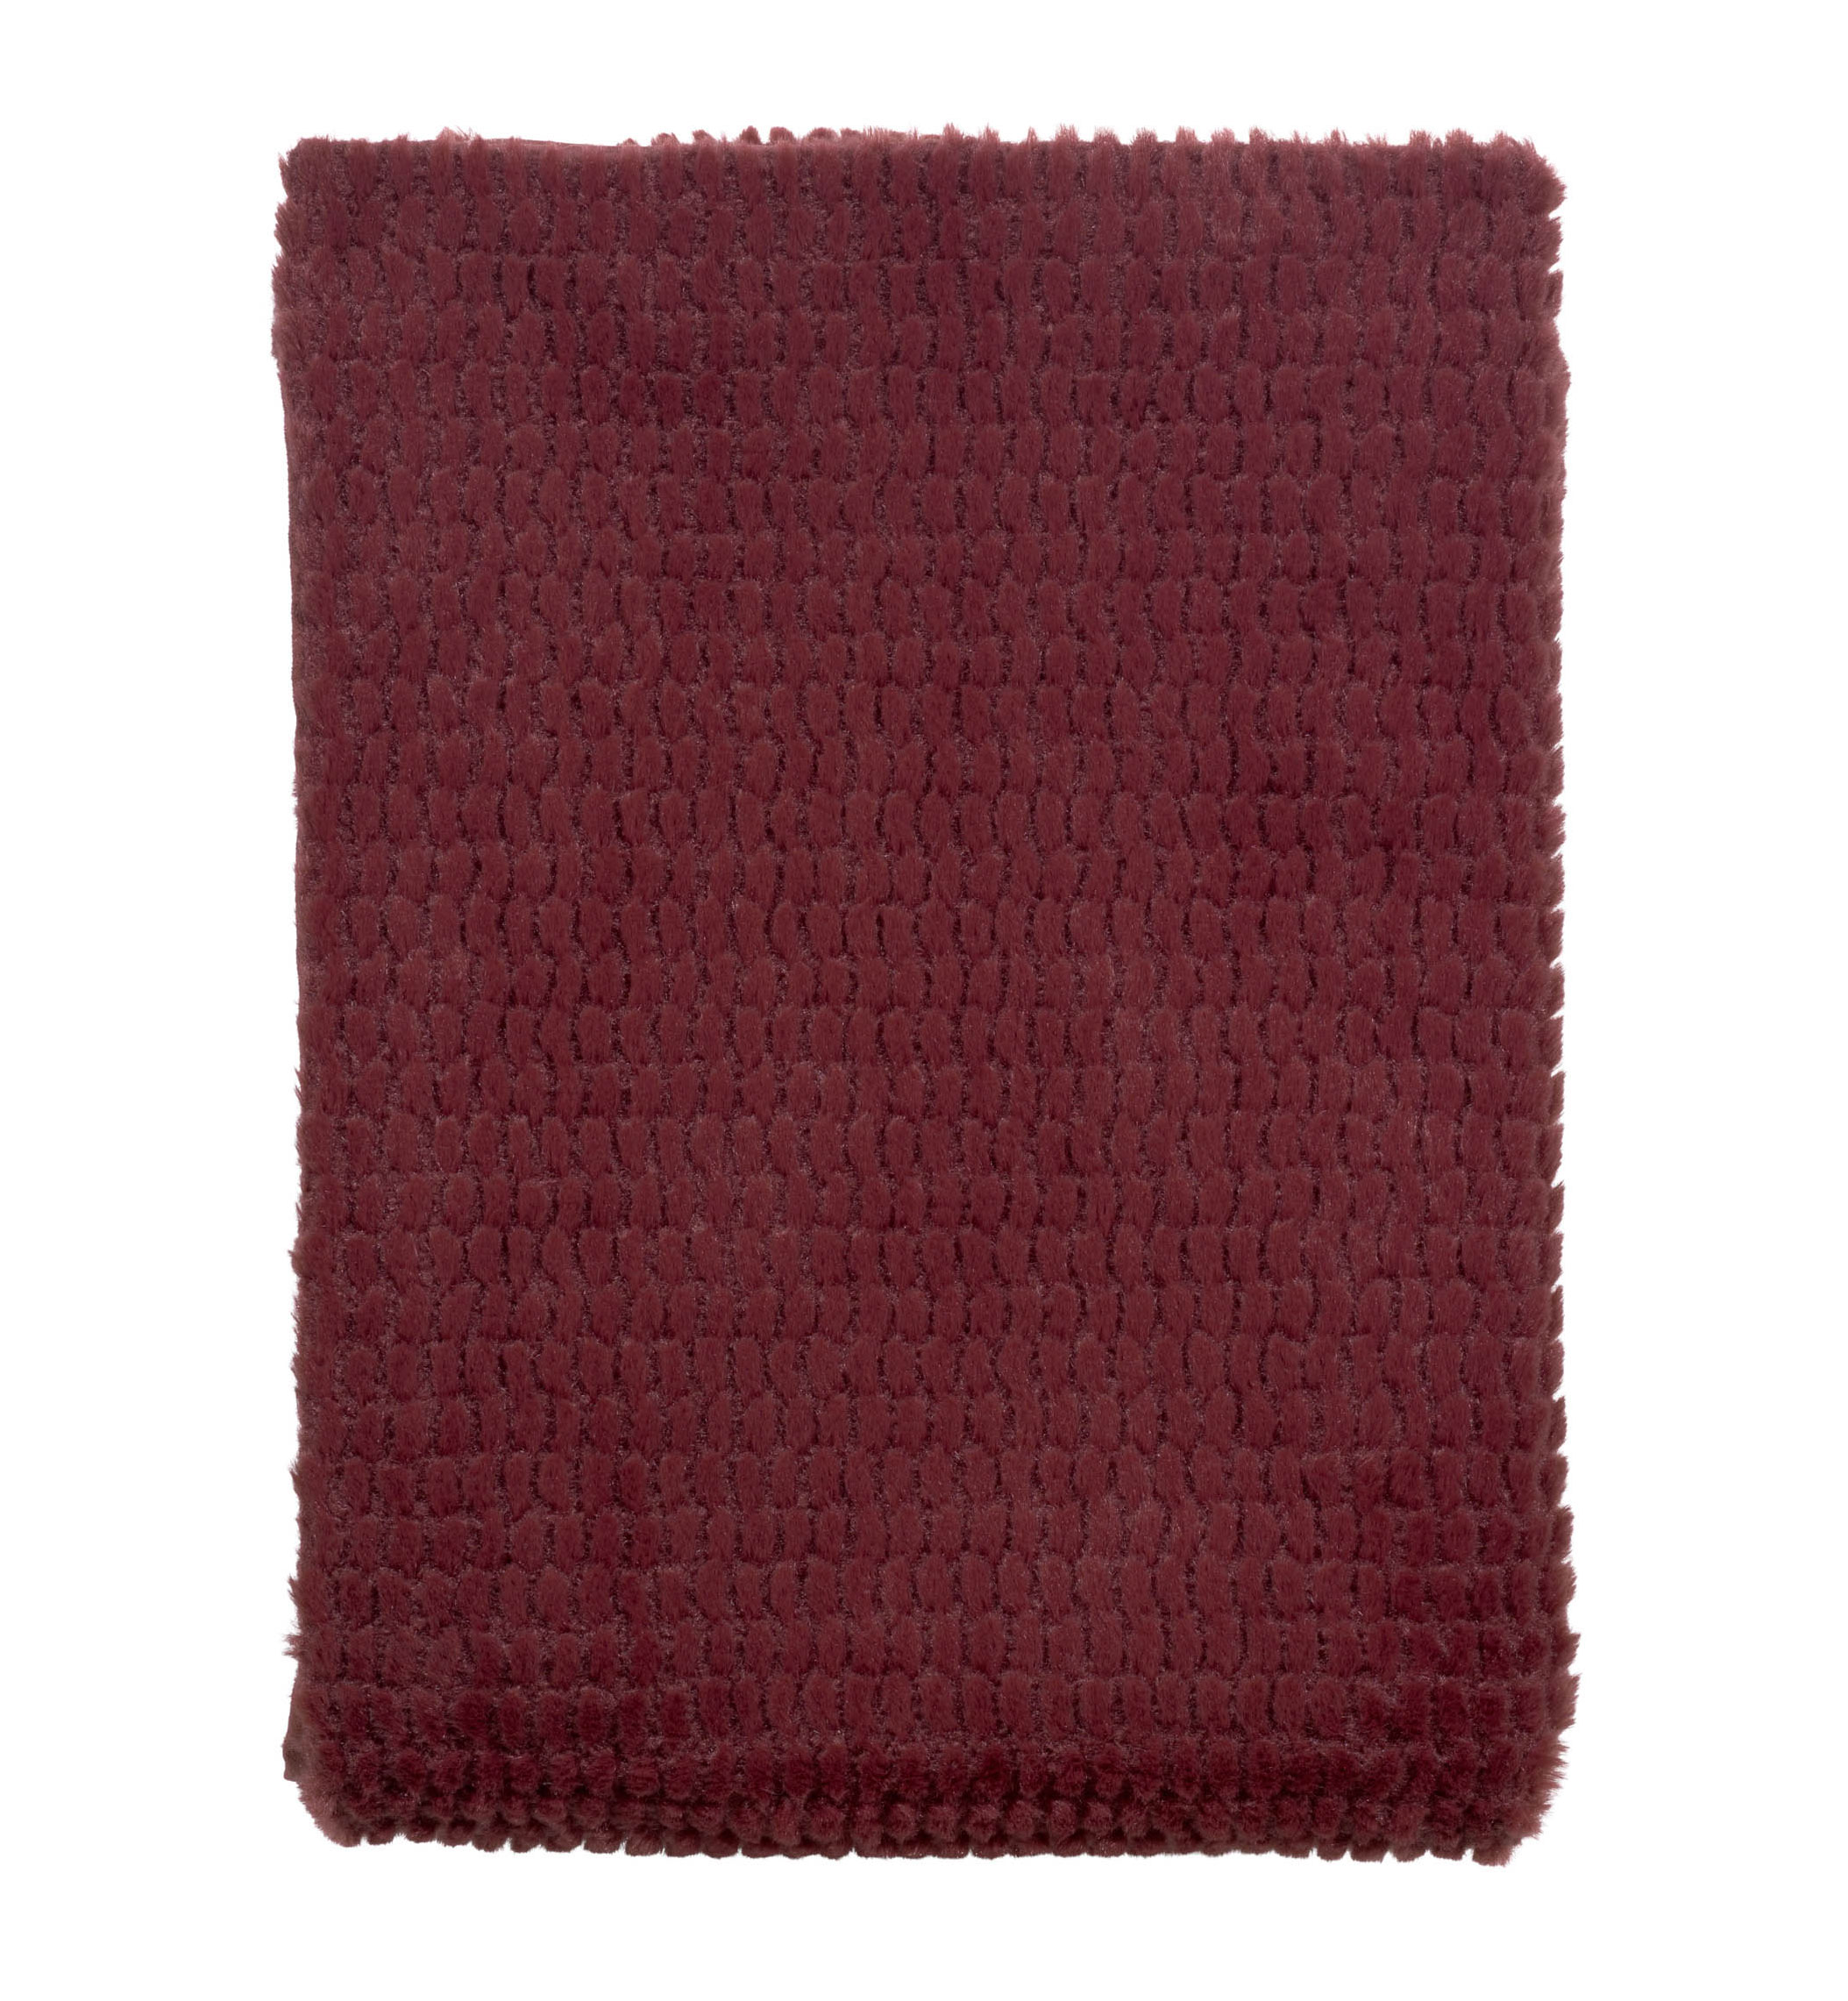 TIMY - Plaid Bordeaux 130x180 cm - rood